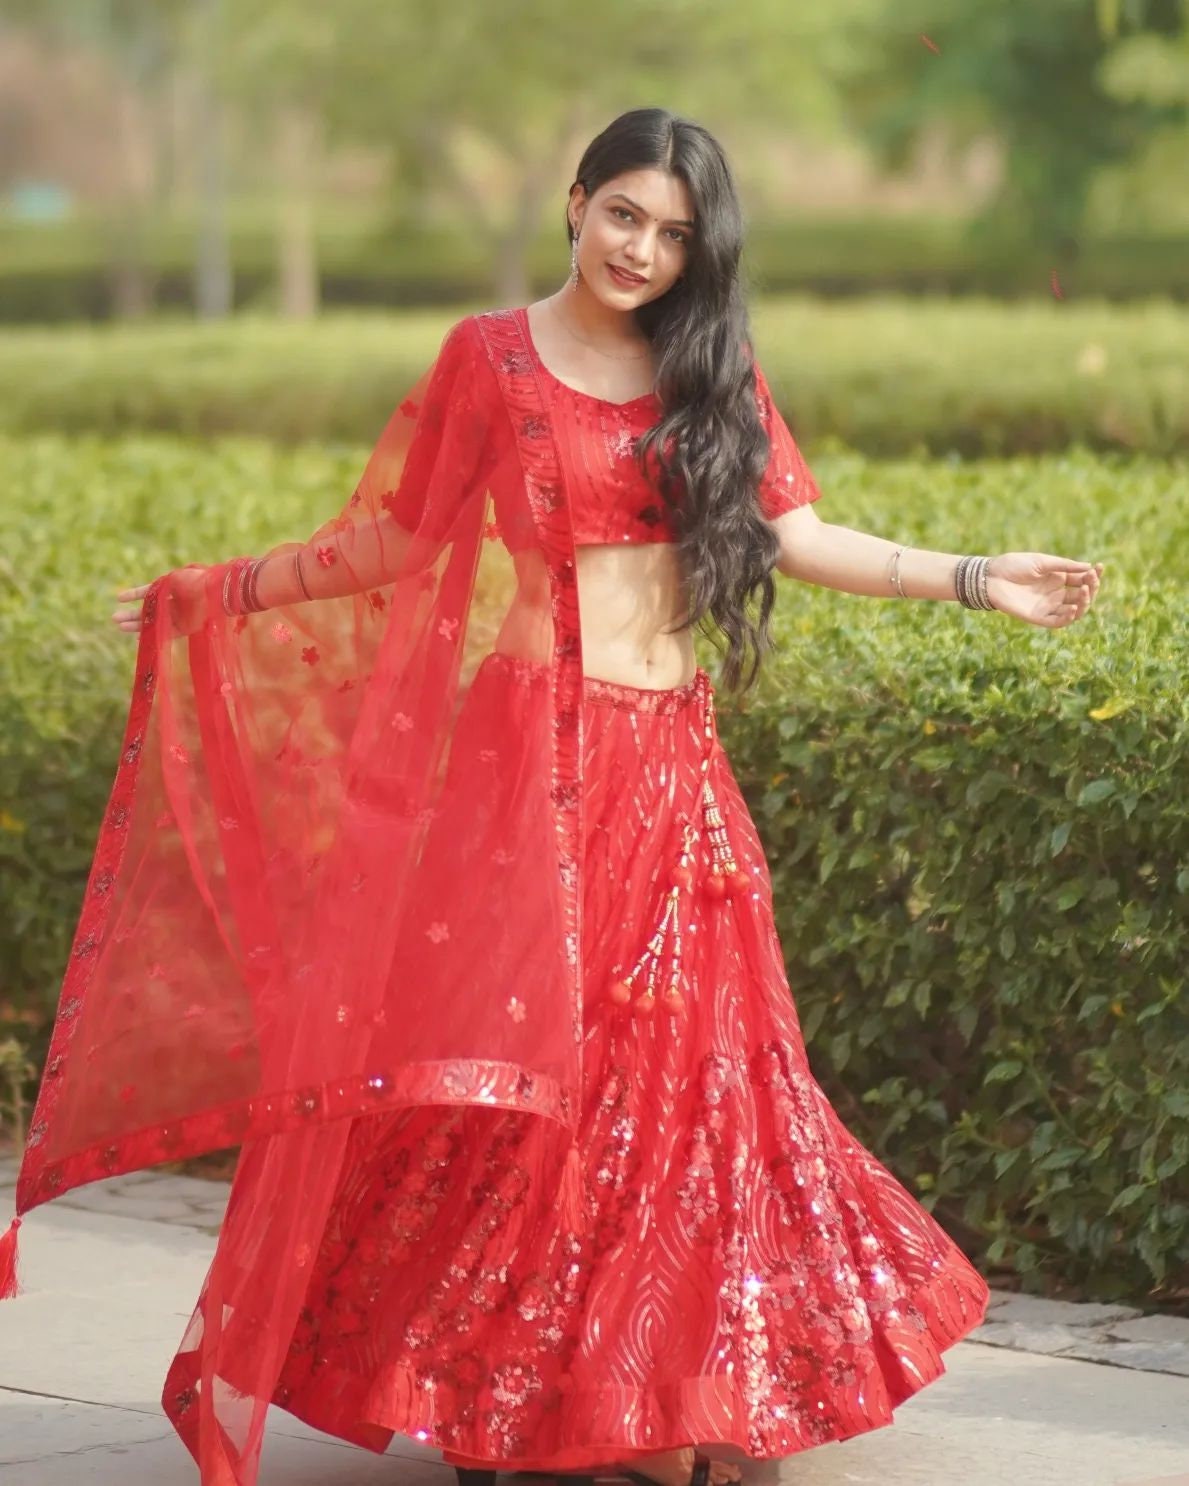 Disfraz de hindú Bollywood rojo con velo para mujer por 15,50 €